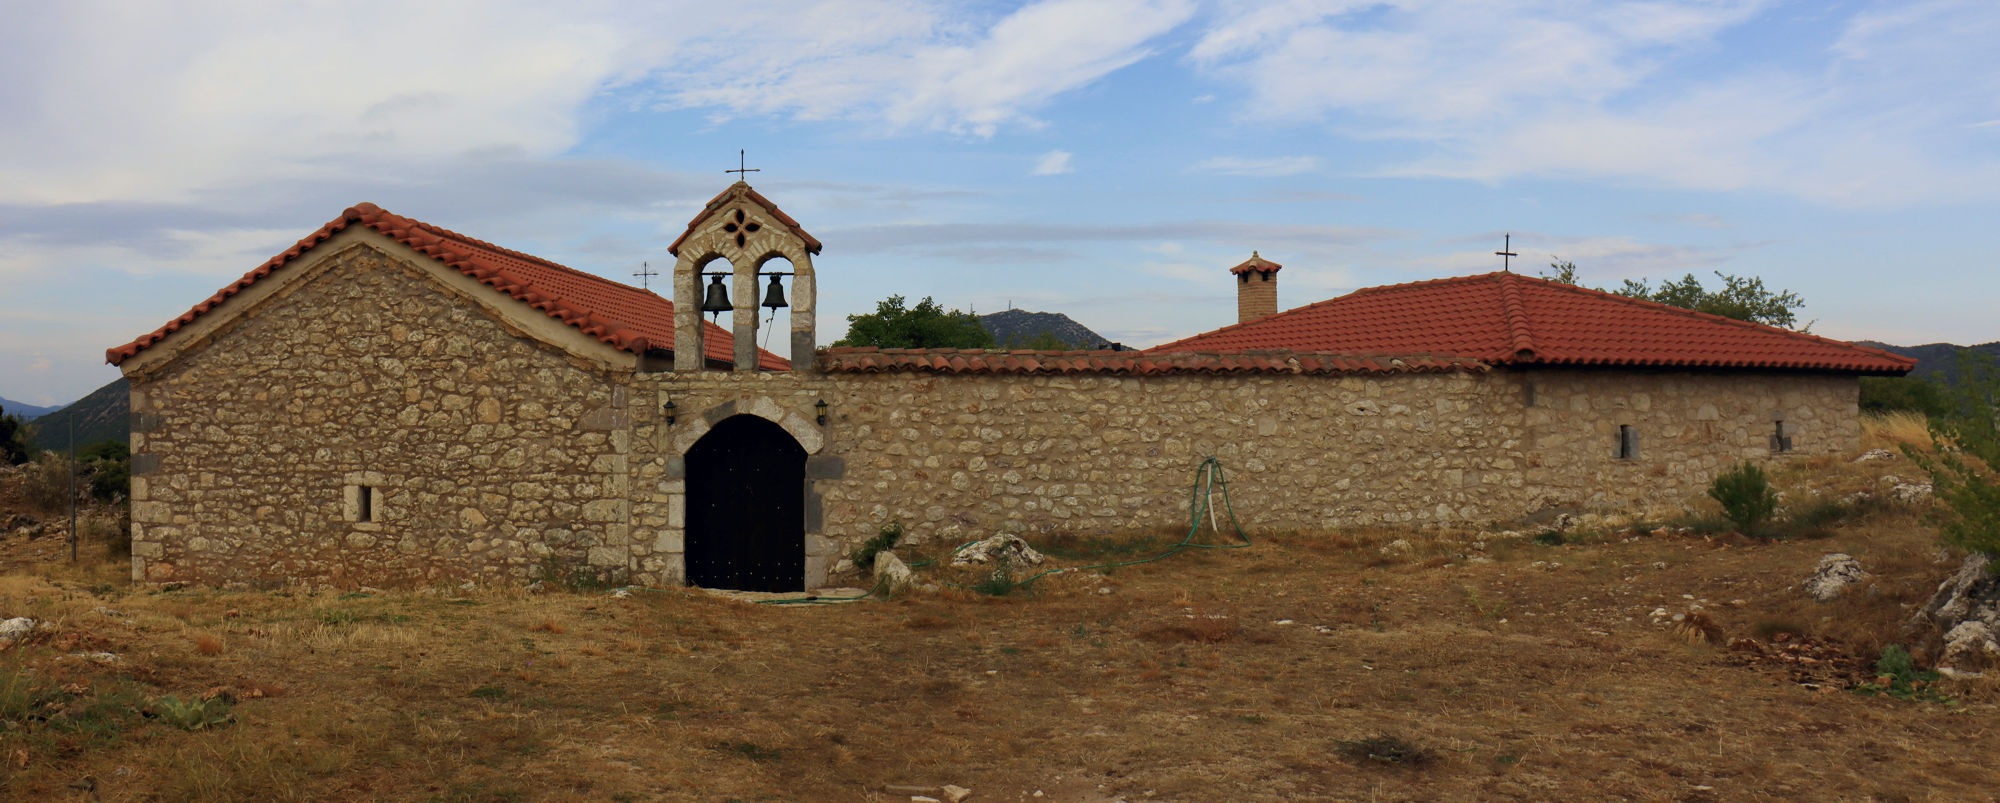 The monasteries of Mt Menalon: Agii Apostoli monastery near Zygovisti